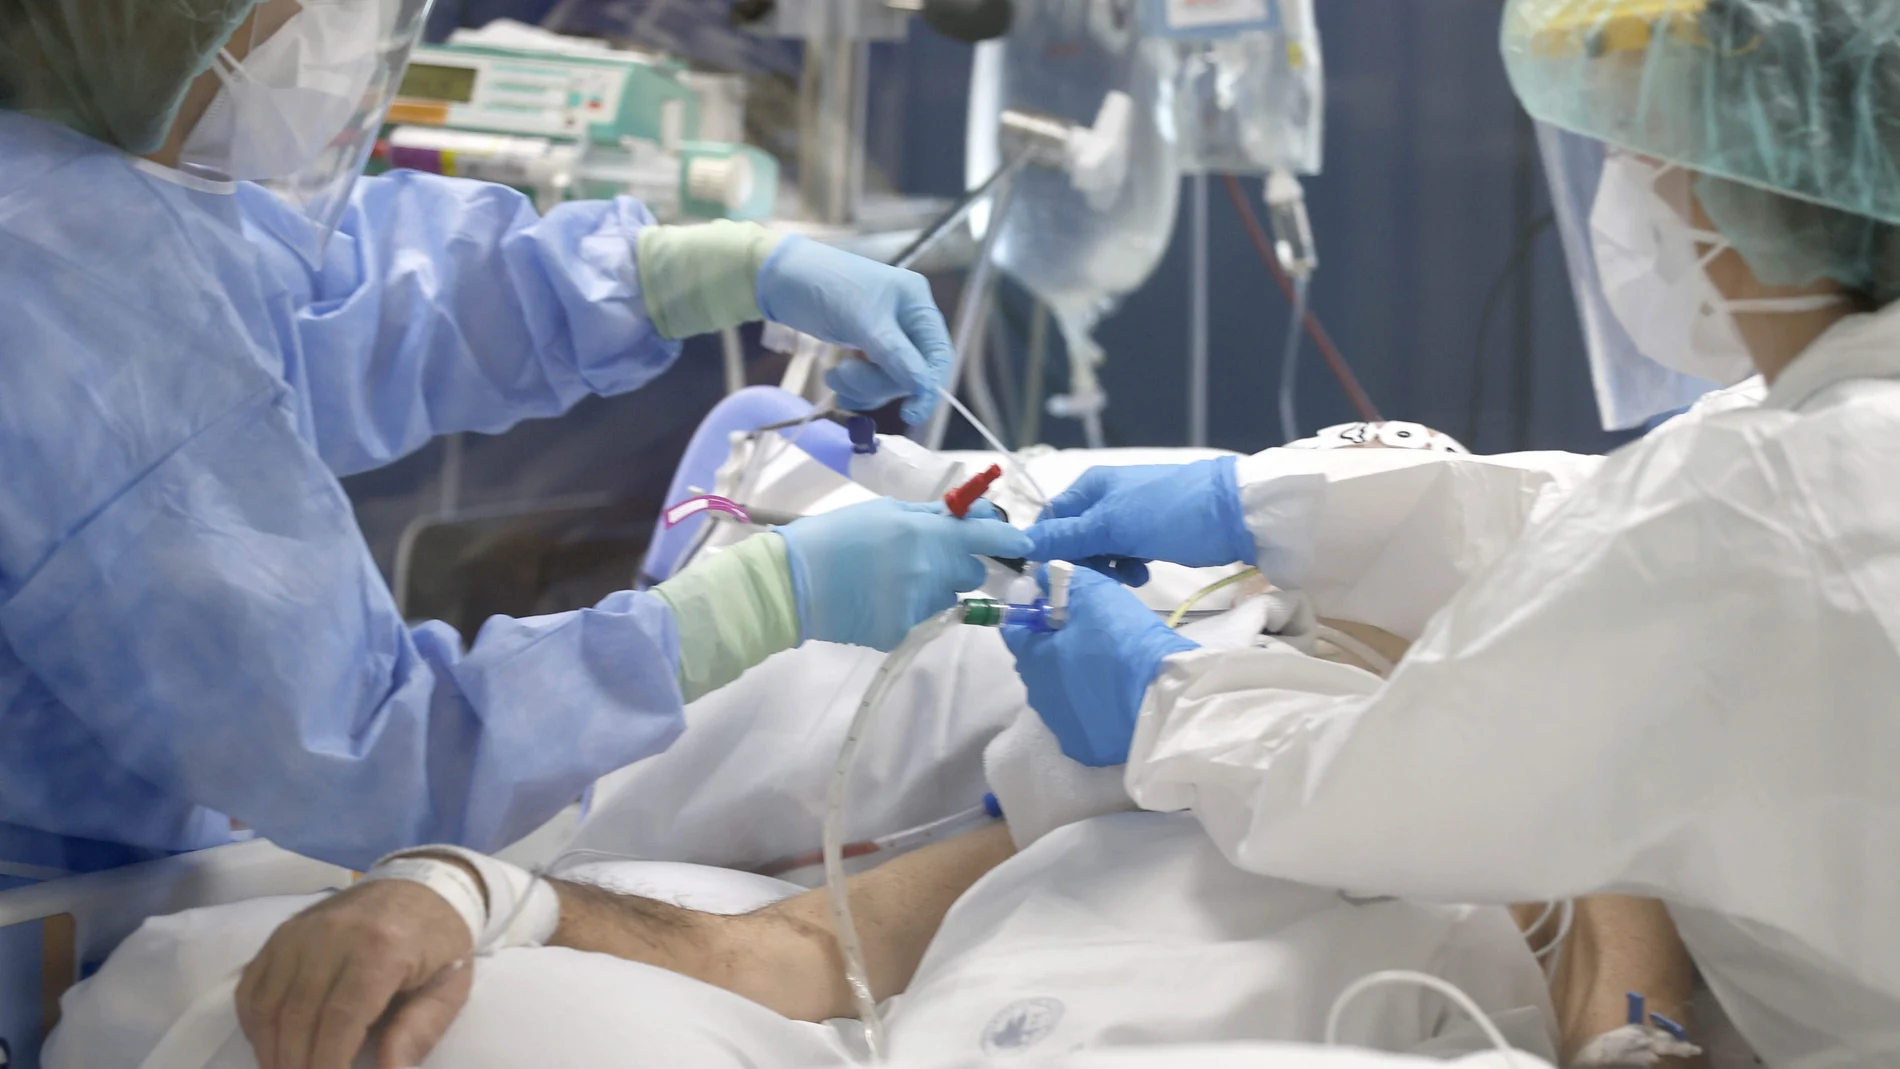 Enfermeras del hospital bilbaíno de Basurto, tratan s a un paciente infectado por Covid 19, en la Unidad de Críticos del hospital vizcaíno